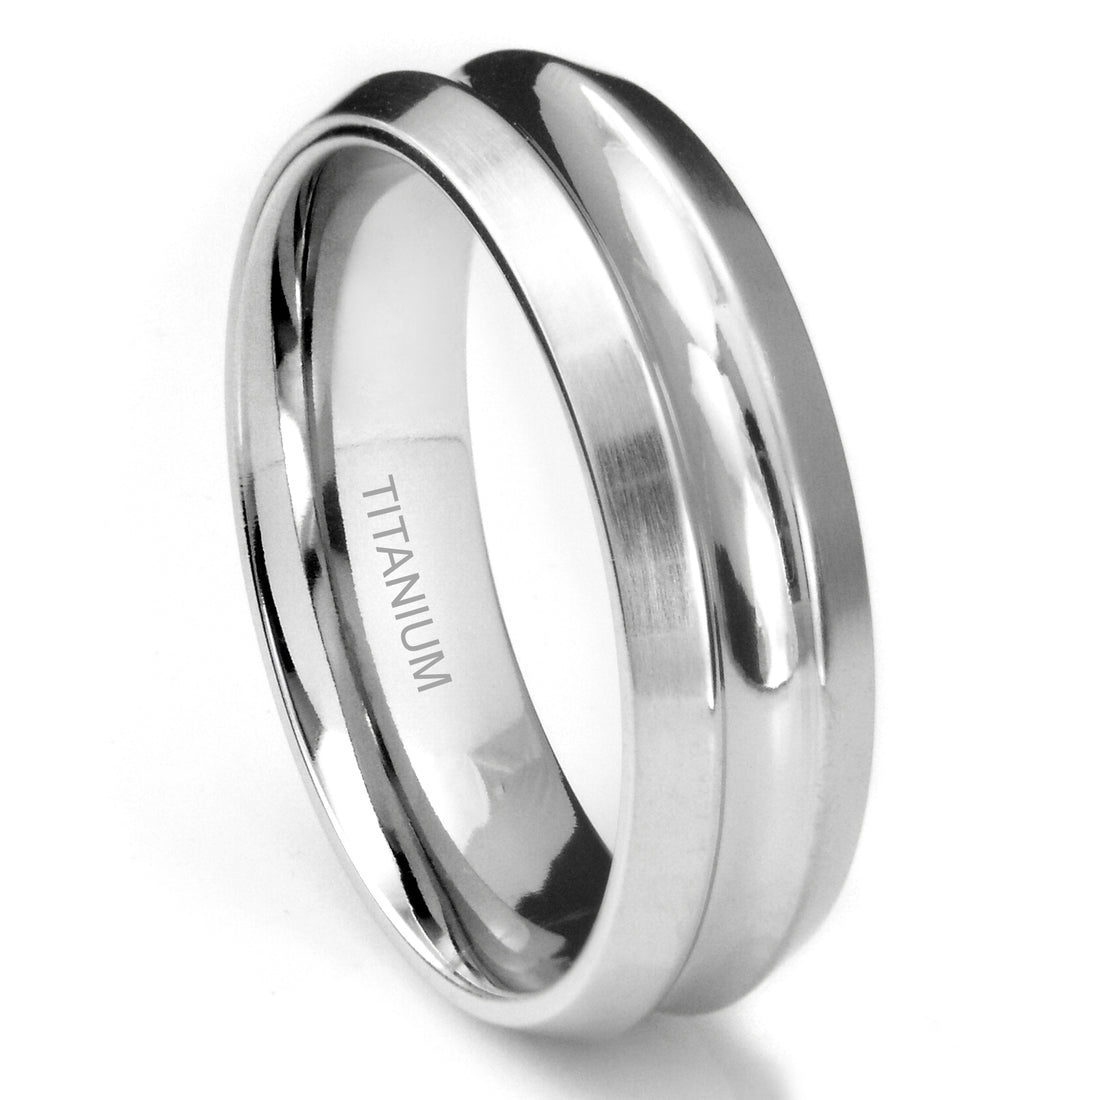 Should I choose a Titanium Ring?